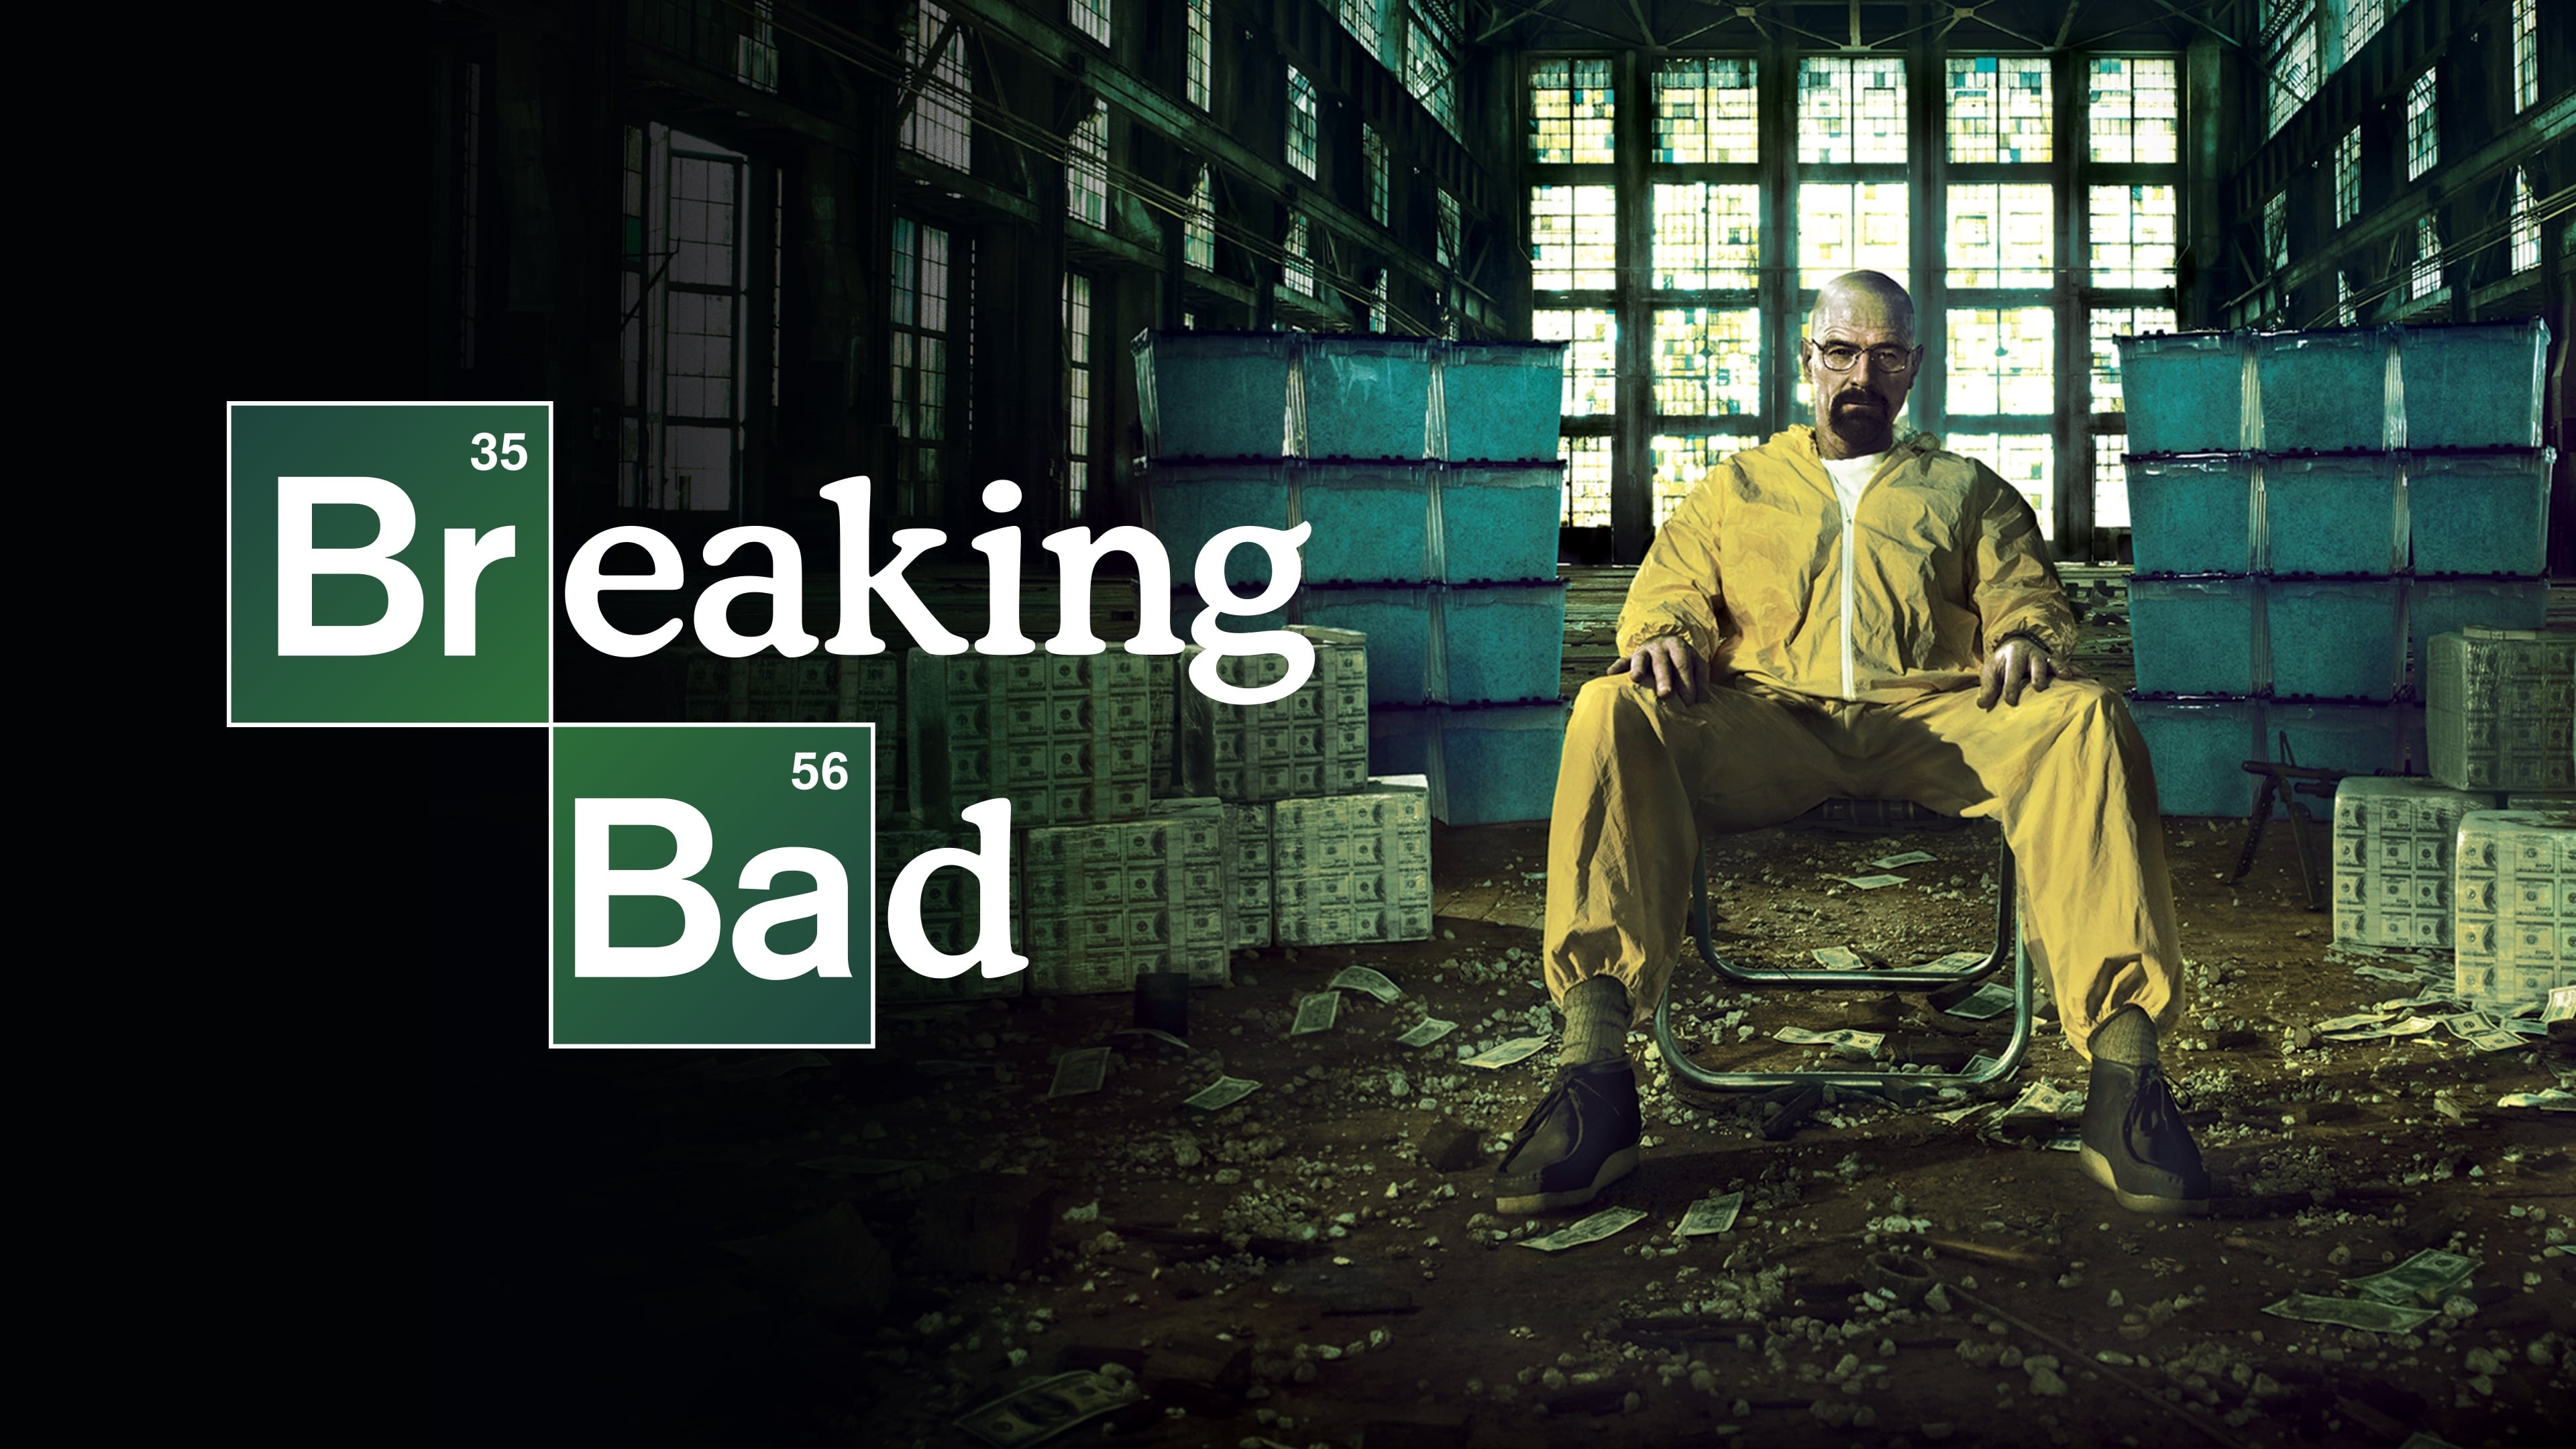 Poster Phim Tập làm người xấu (Phần 5) (Breaking Bad (Season 5))